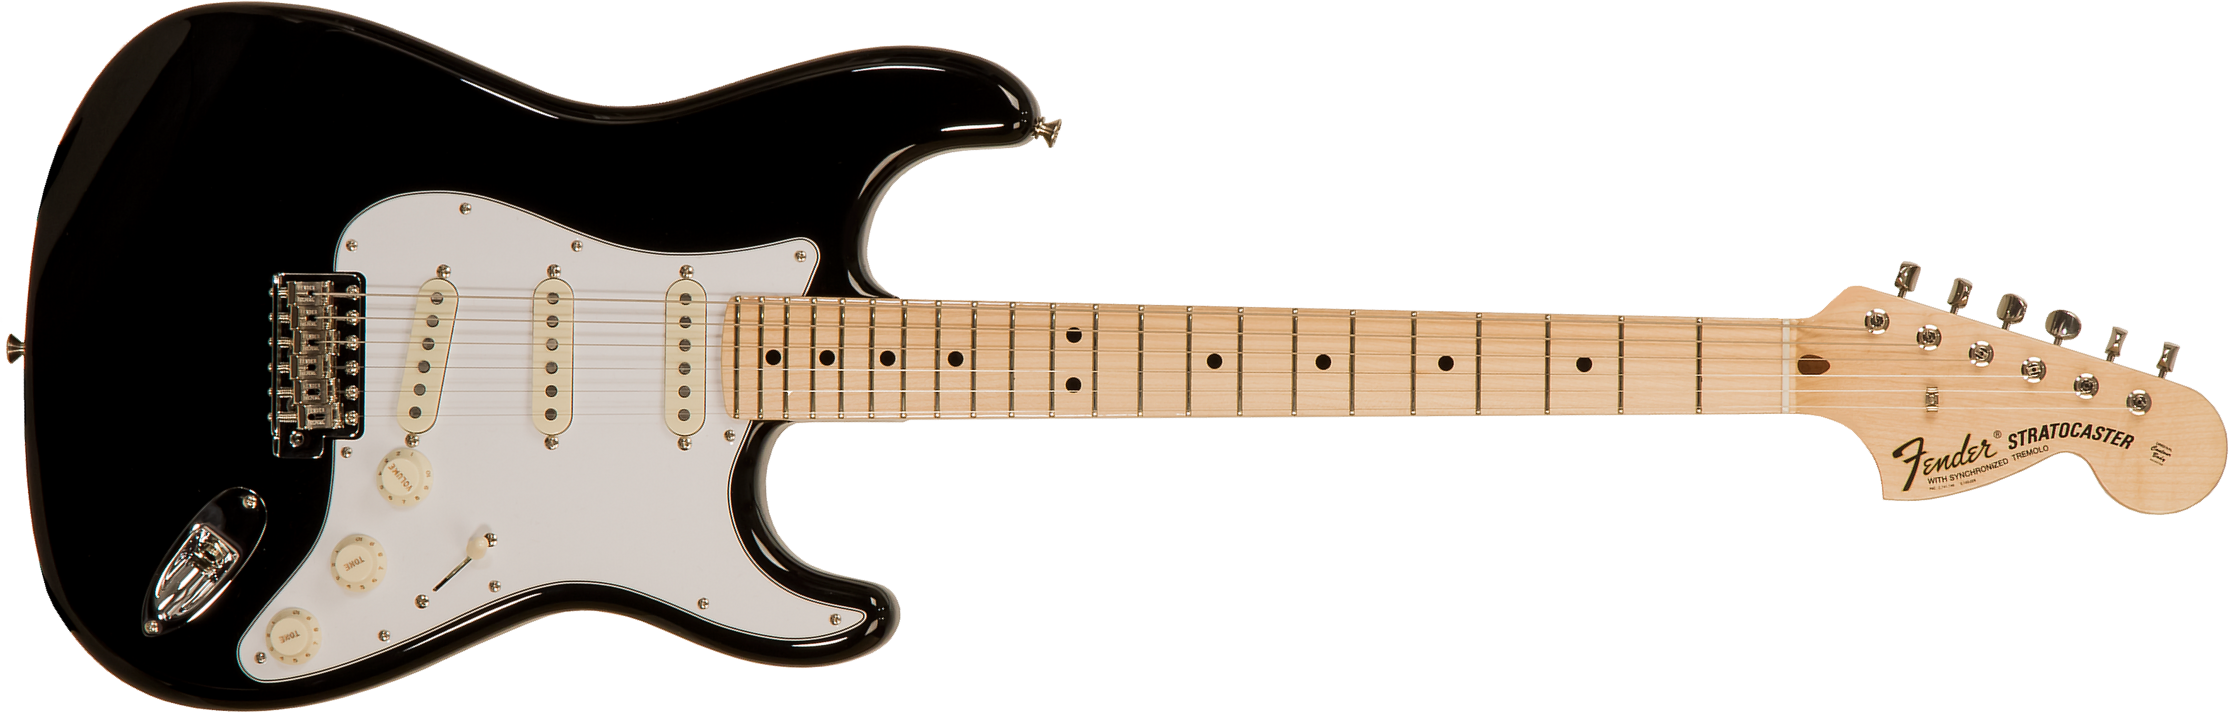 Fender Custom Shop Strat 1969 3s Trem Mn #r123423 - Nos Black - Elektrische gitaar in Str-vorm - Main picture